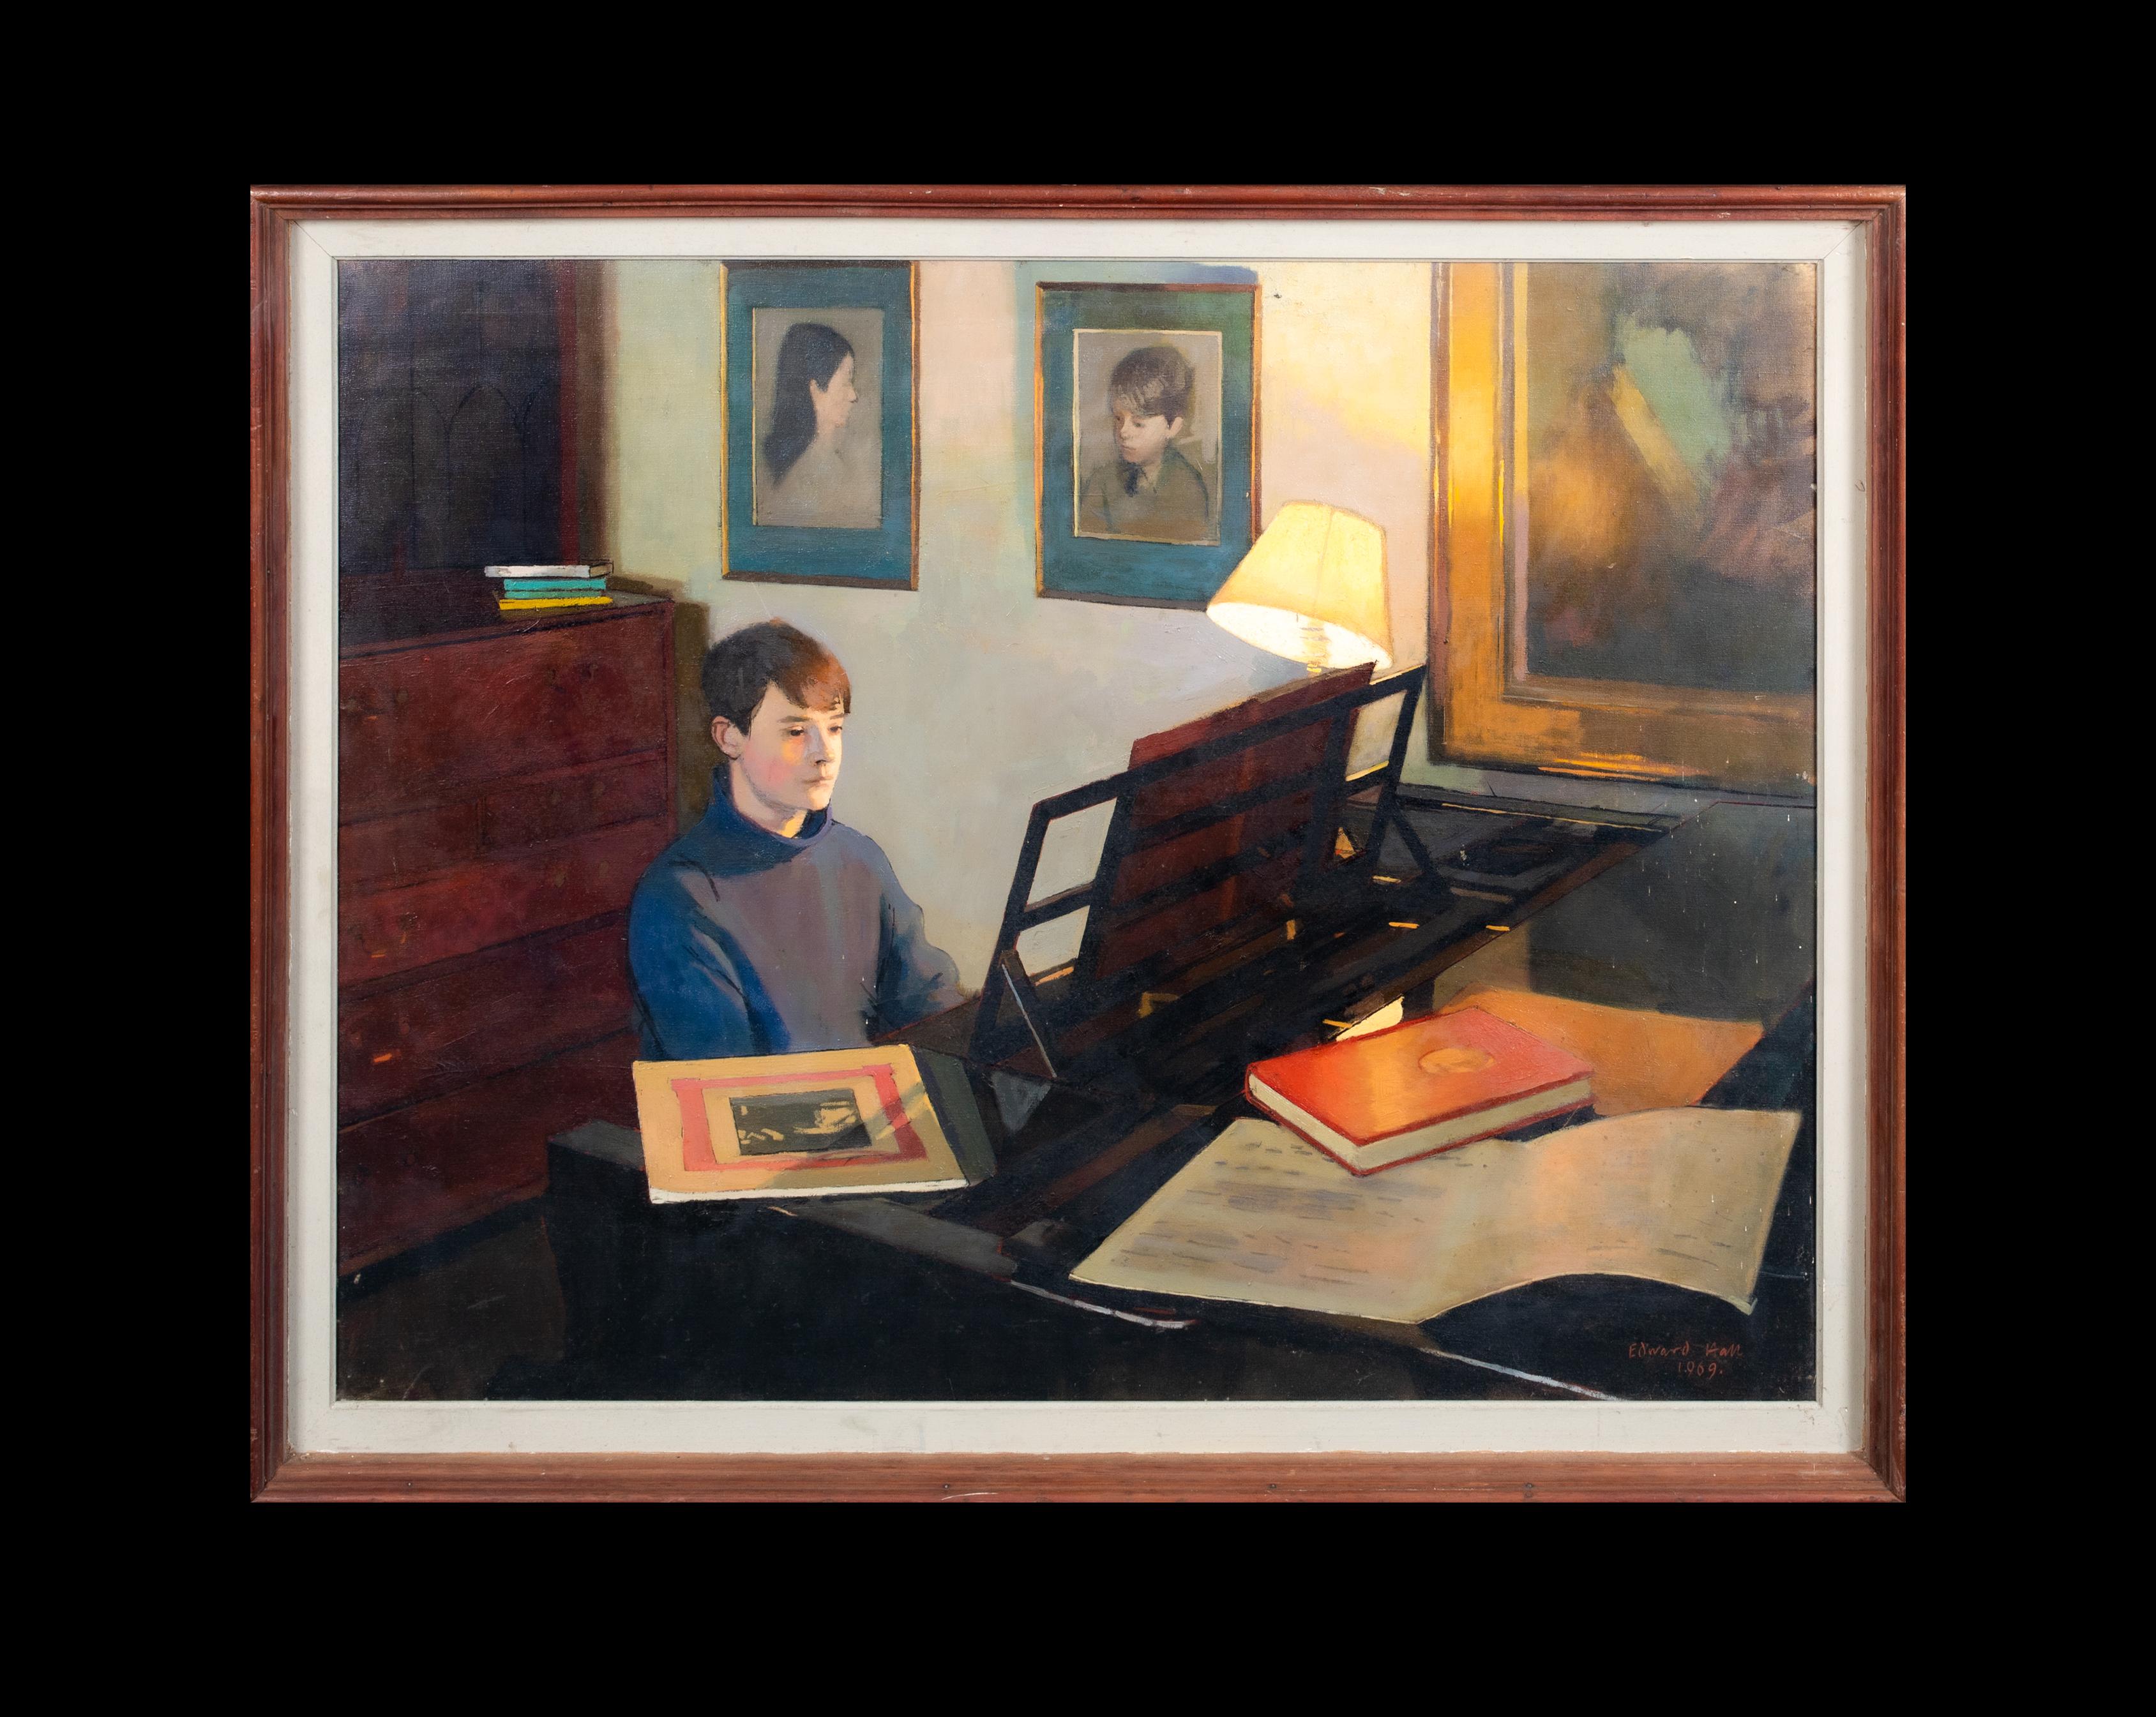 Matthew At The Piano, datiert 1969  EDWARD HALL (1922-1991) – Painting von Unknown